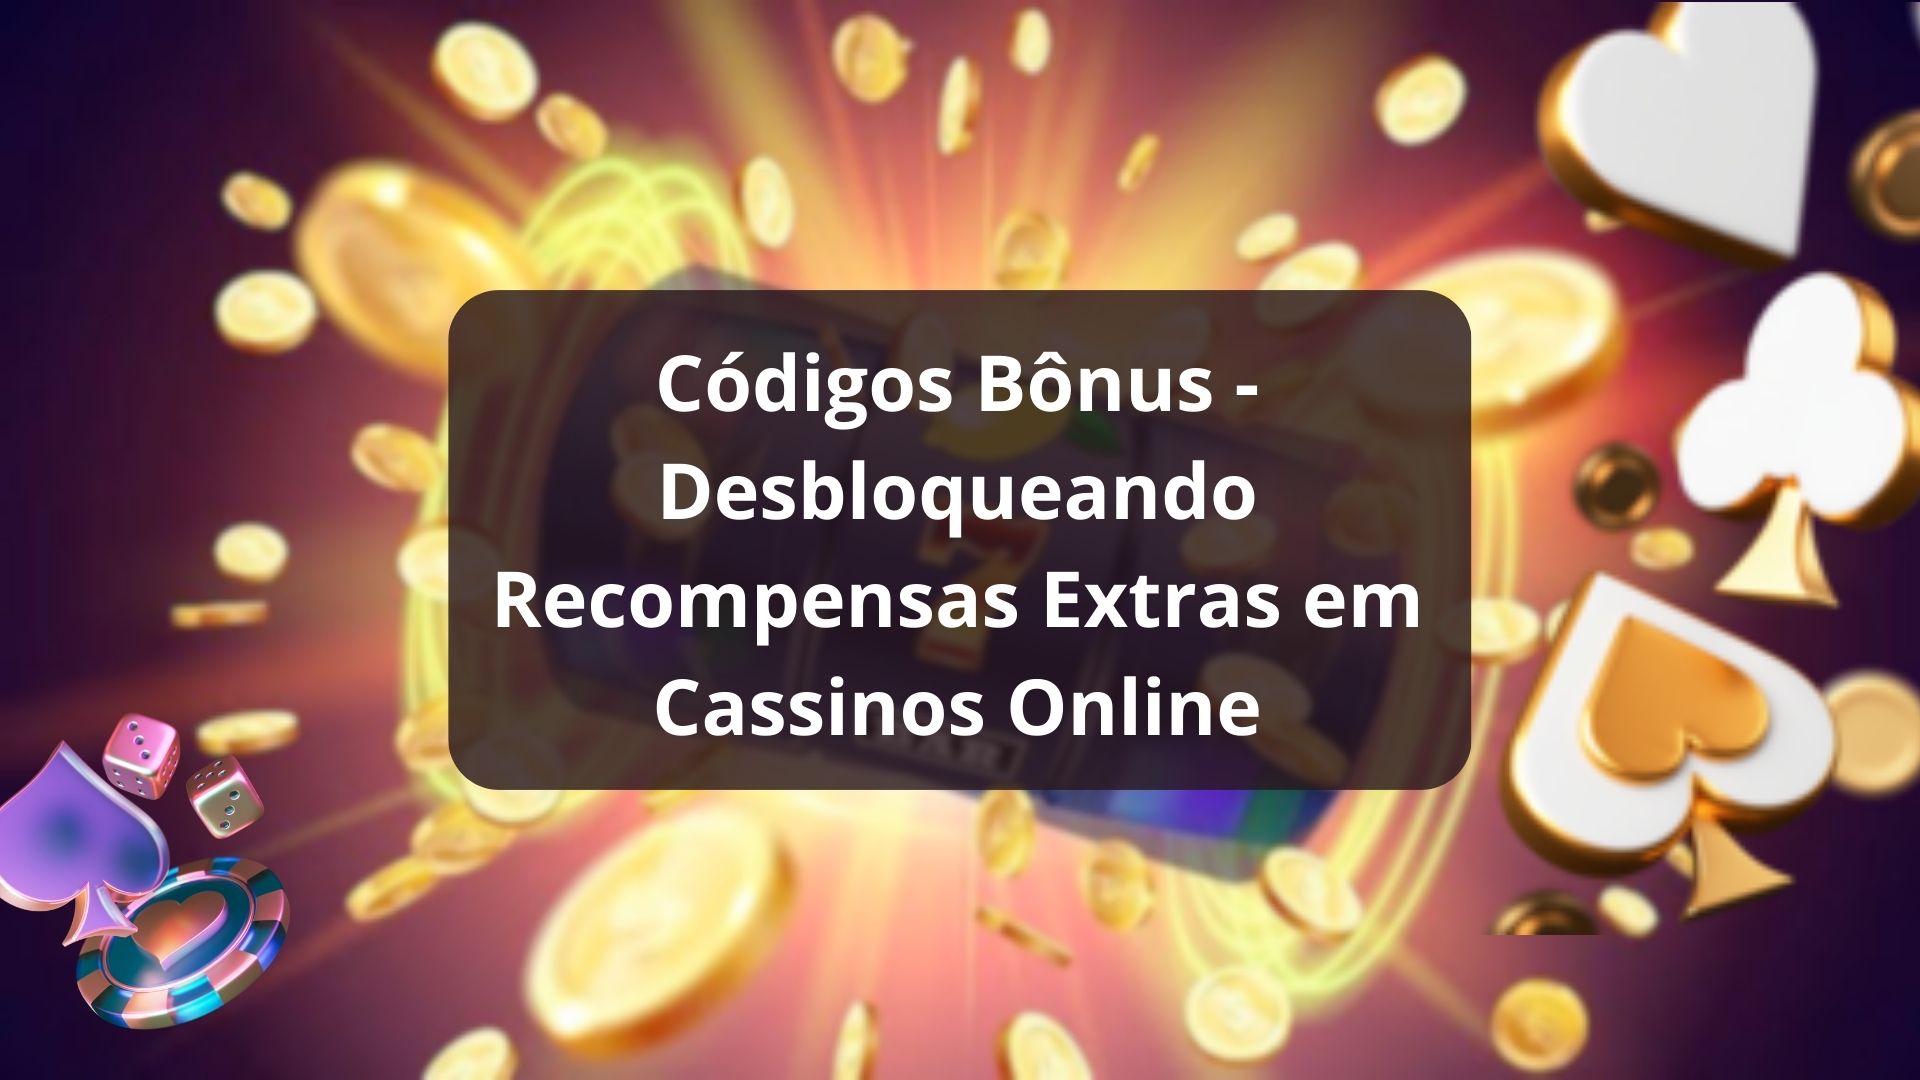 Códigos Bônus - Desbloqueando Recompensas Extras em Cassinos Online